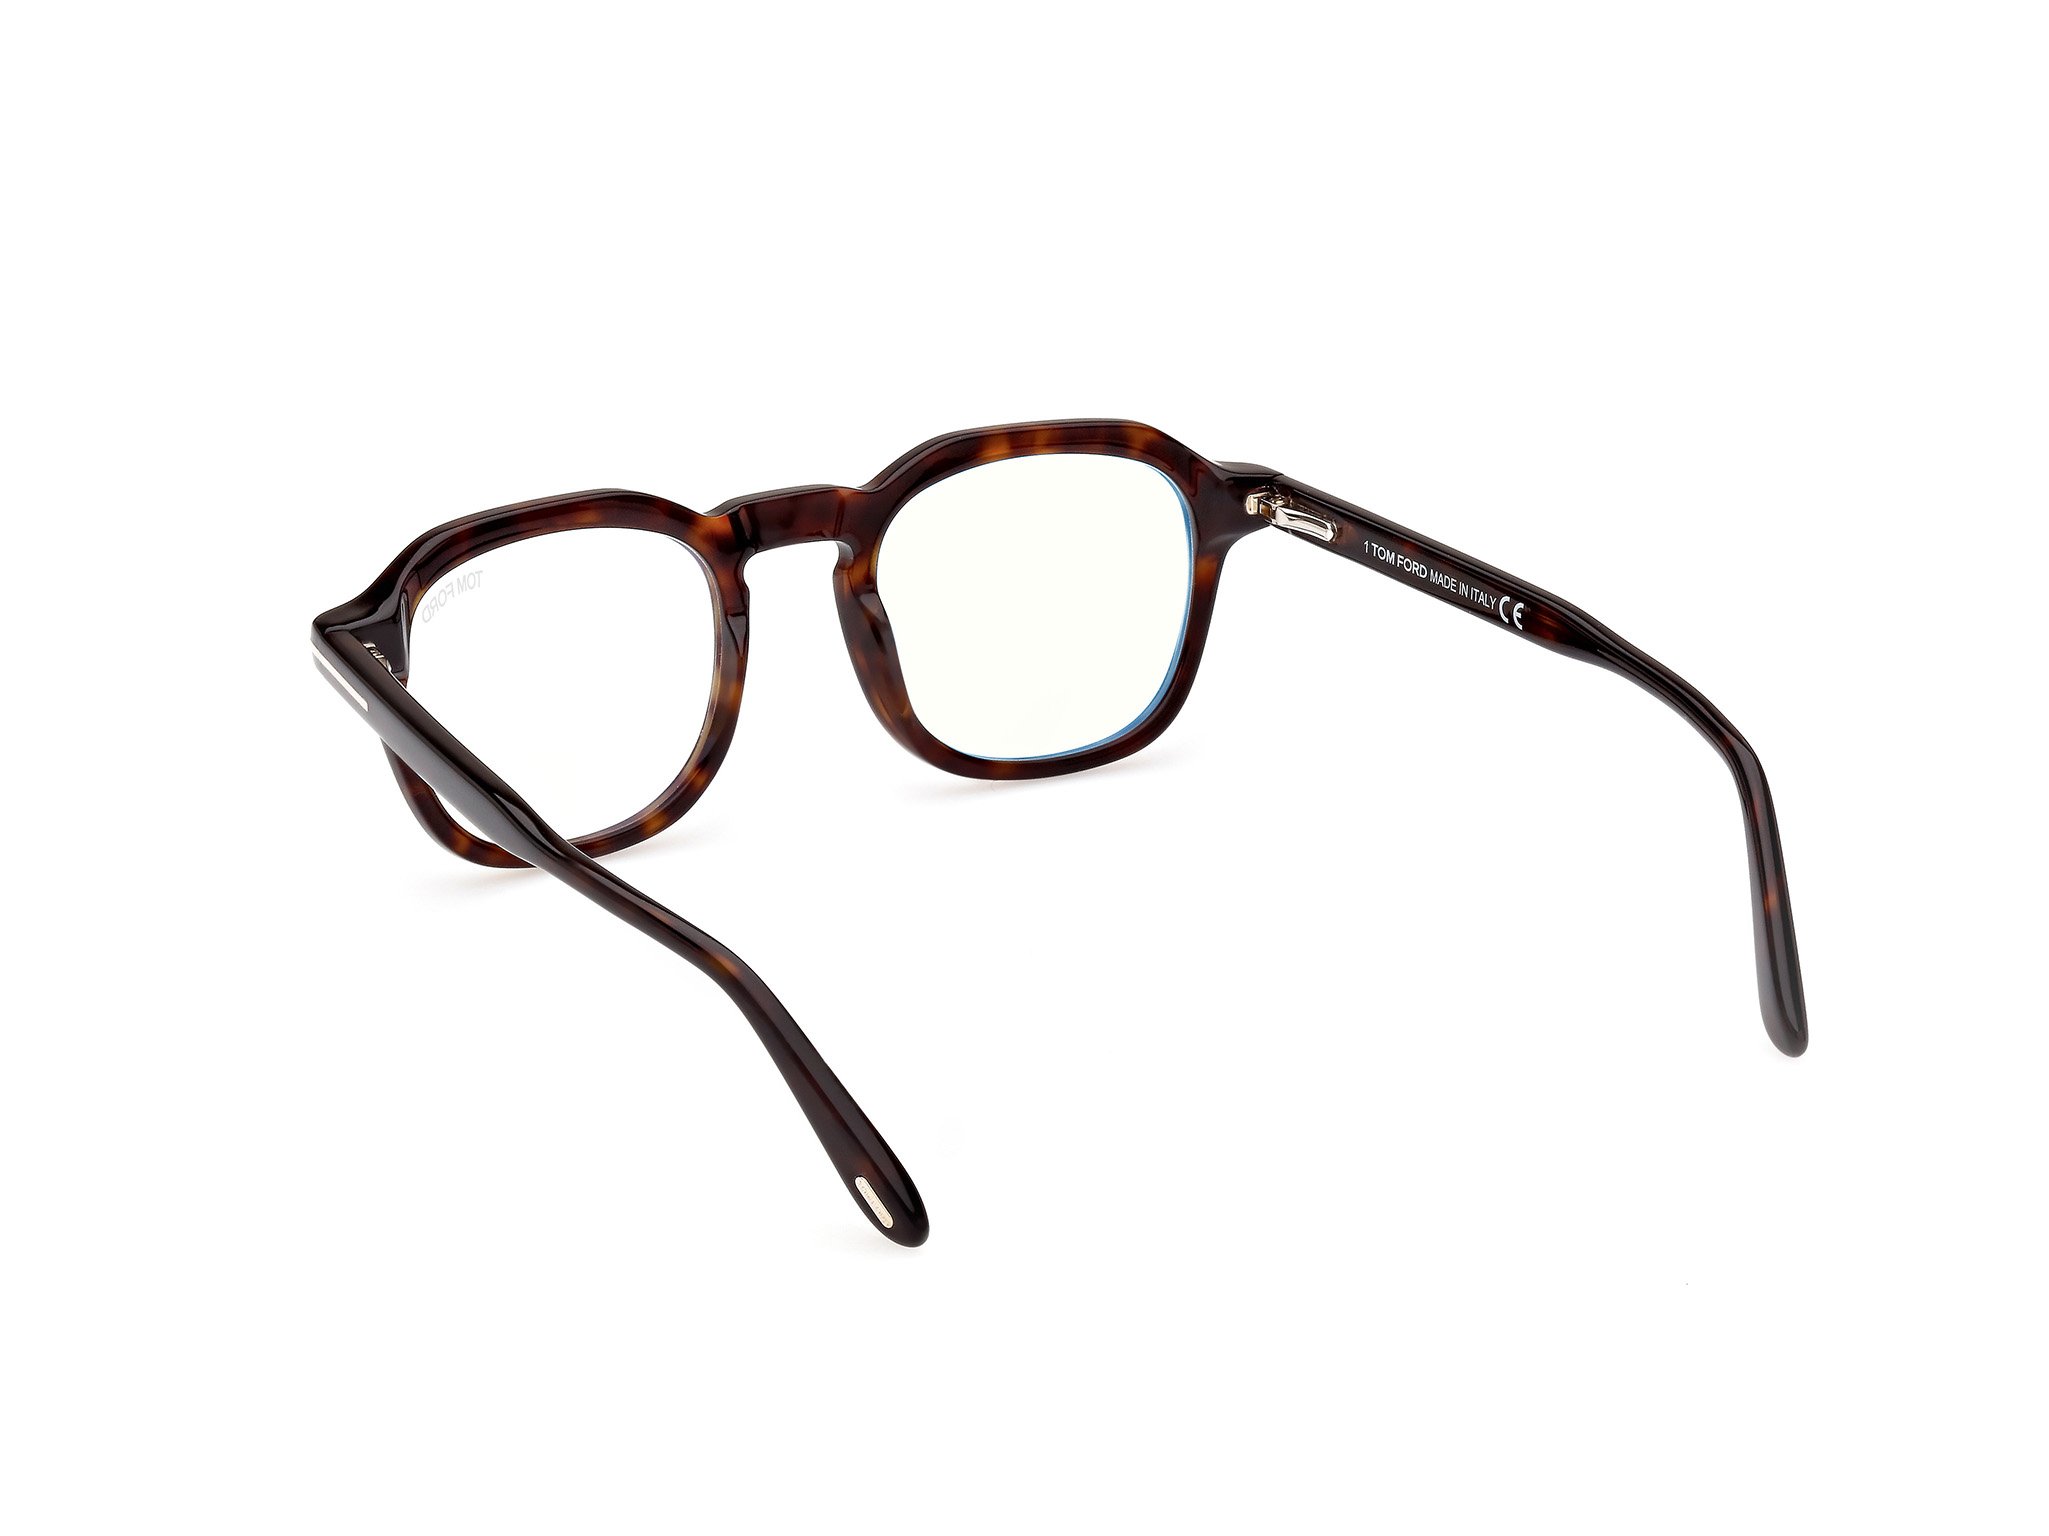 Das Bild zeigt die Korrektionsbrille FT5836-B 052 von der Marke Tom Ford in Havanna.